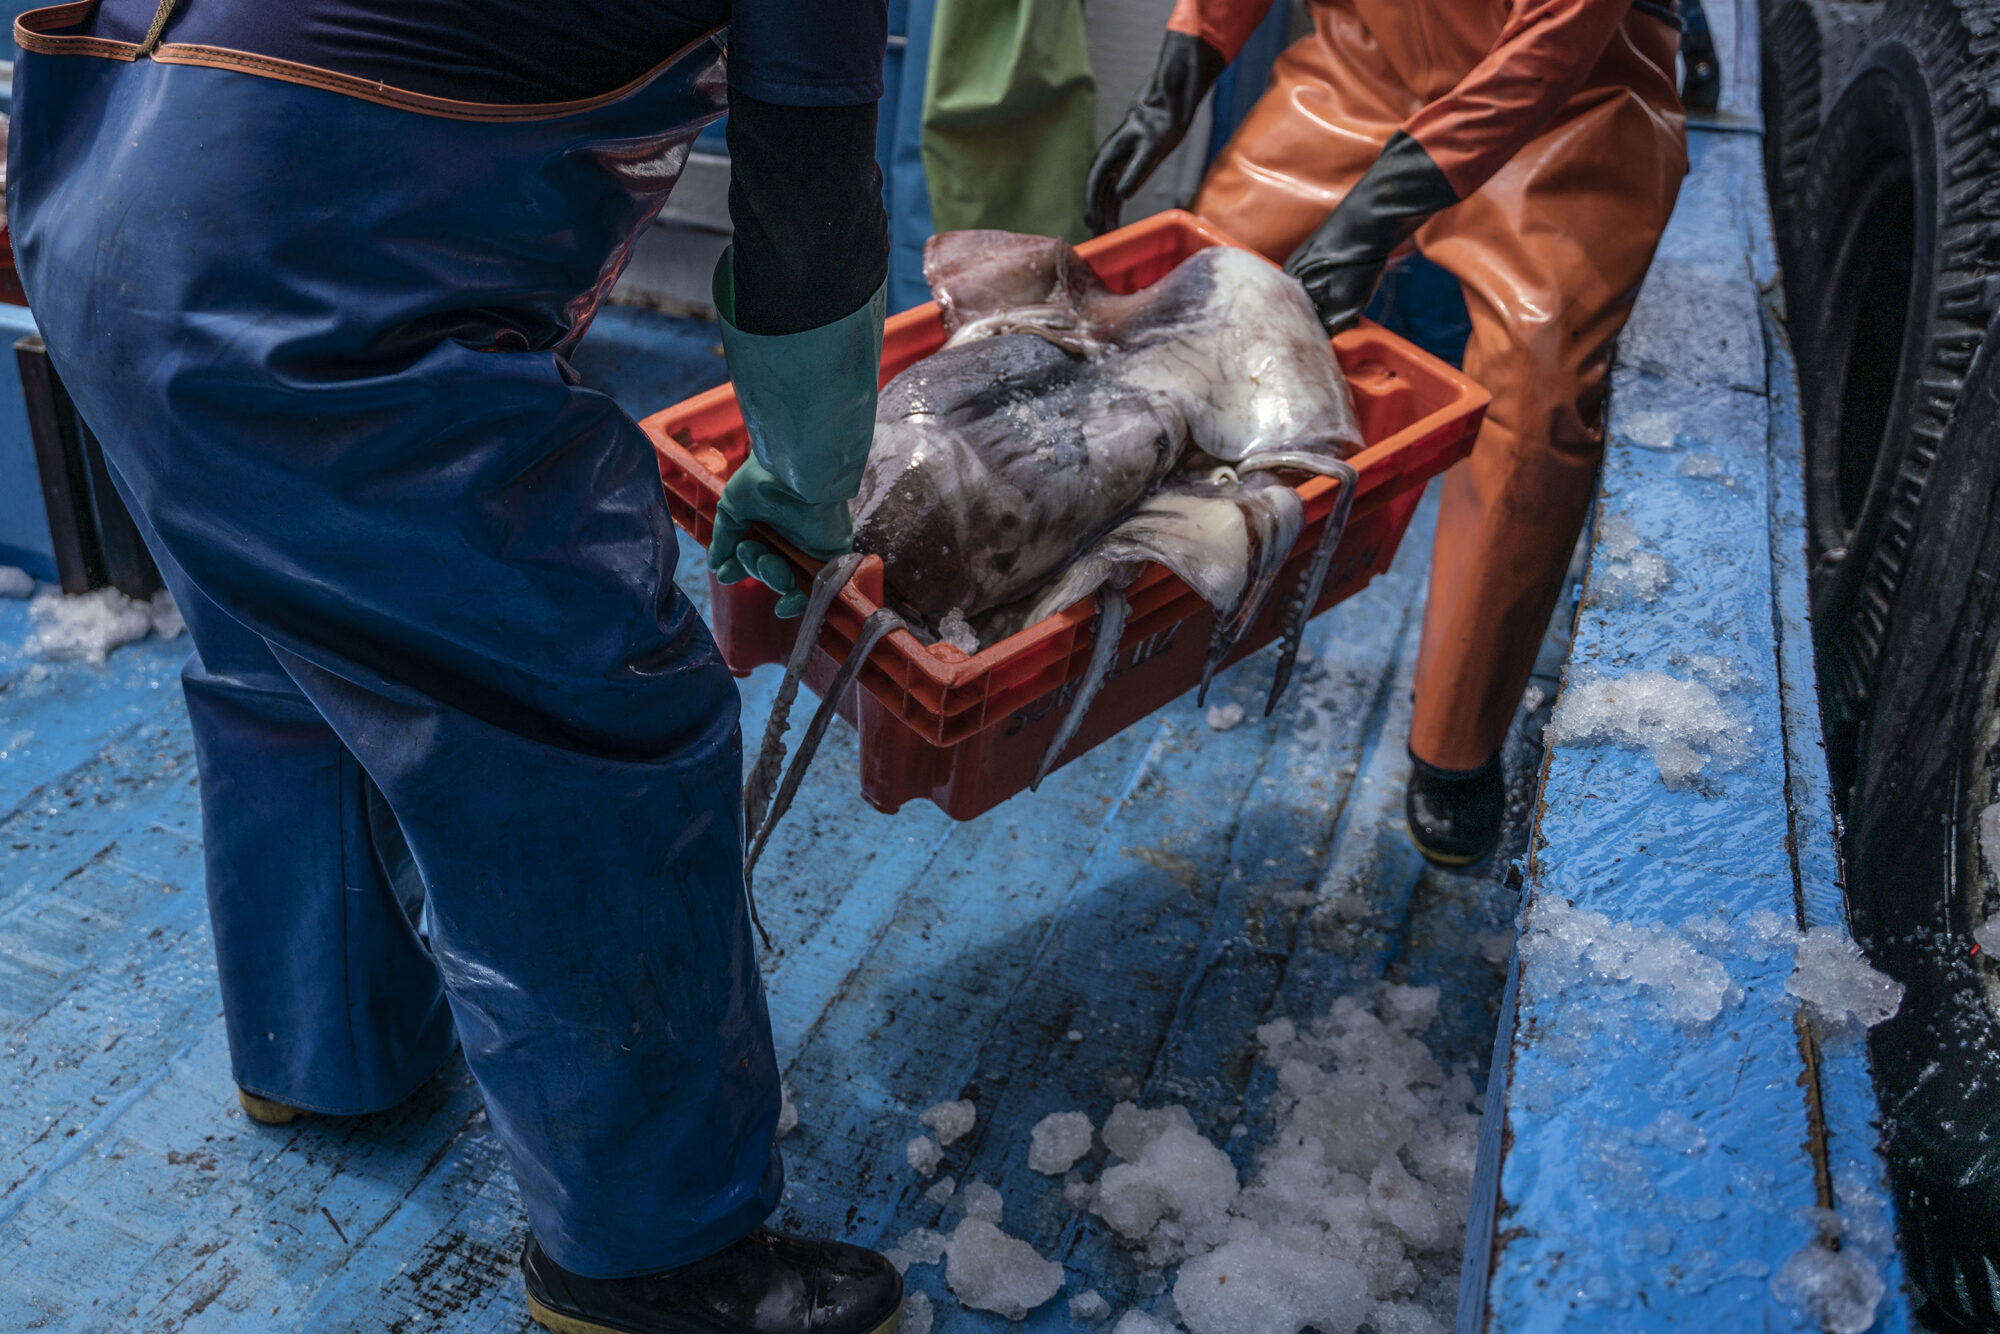 Pescadores descarregam lulas (ou potas, como são conhecidas nas águas do Pacífico) no porto de Paita, no norte do Peru.